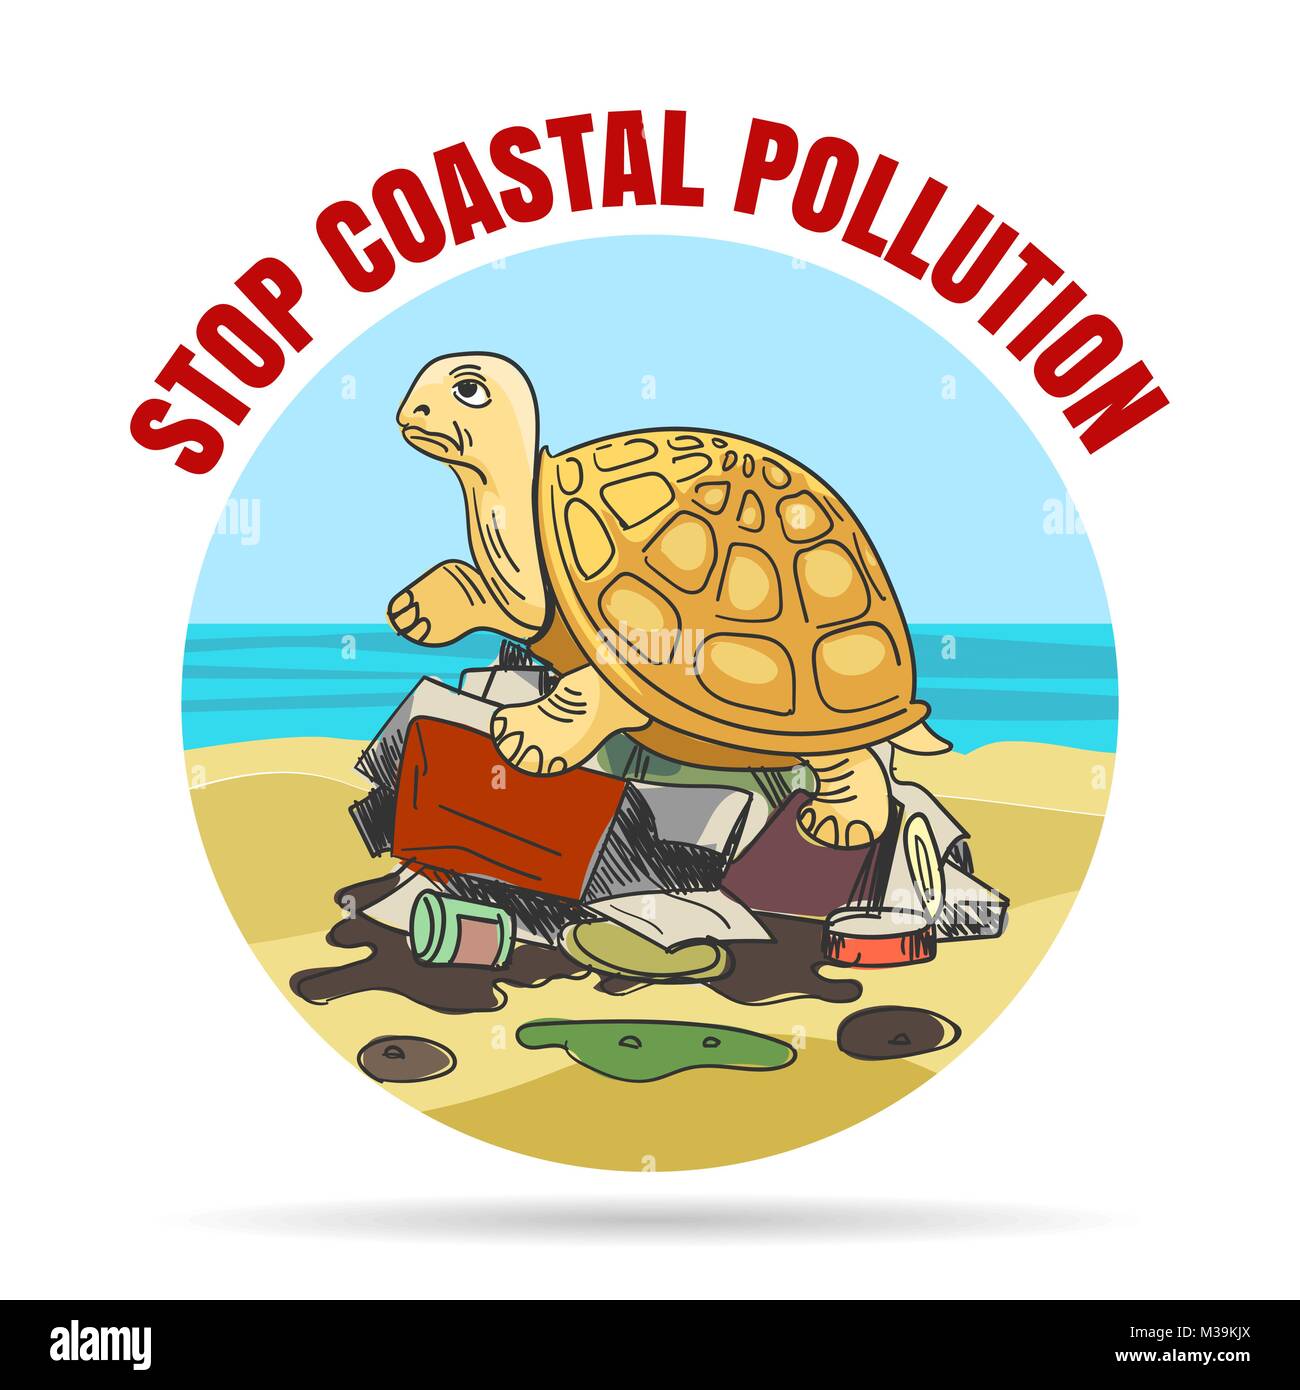 Coastial Verschmutzung Emblem im Comic-stil. Traurige Schildkröte auf einem Haufen Müll. Vector Illustration. Stock Vektor